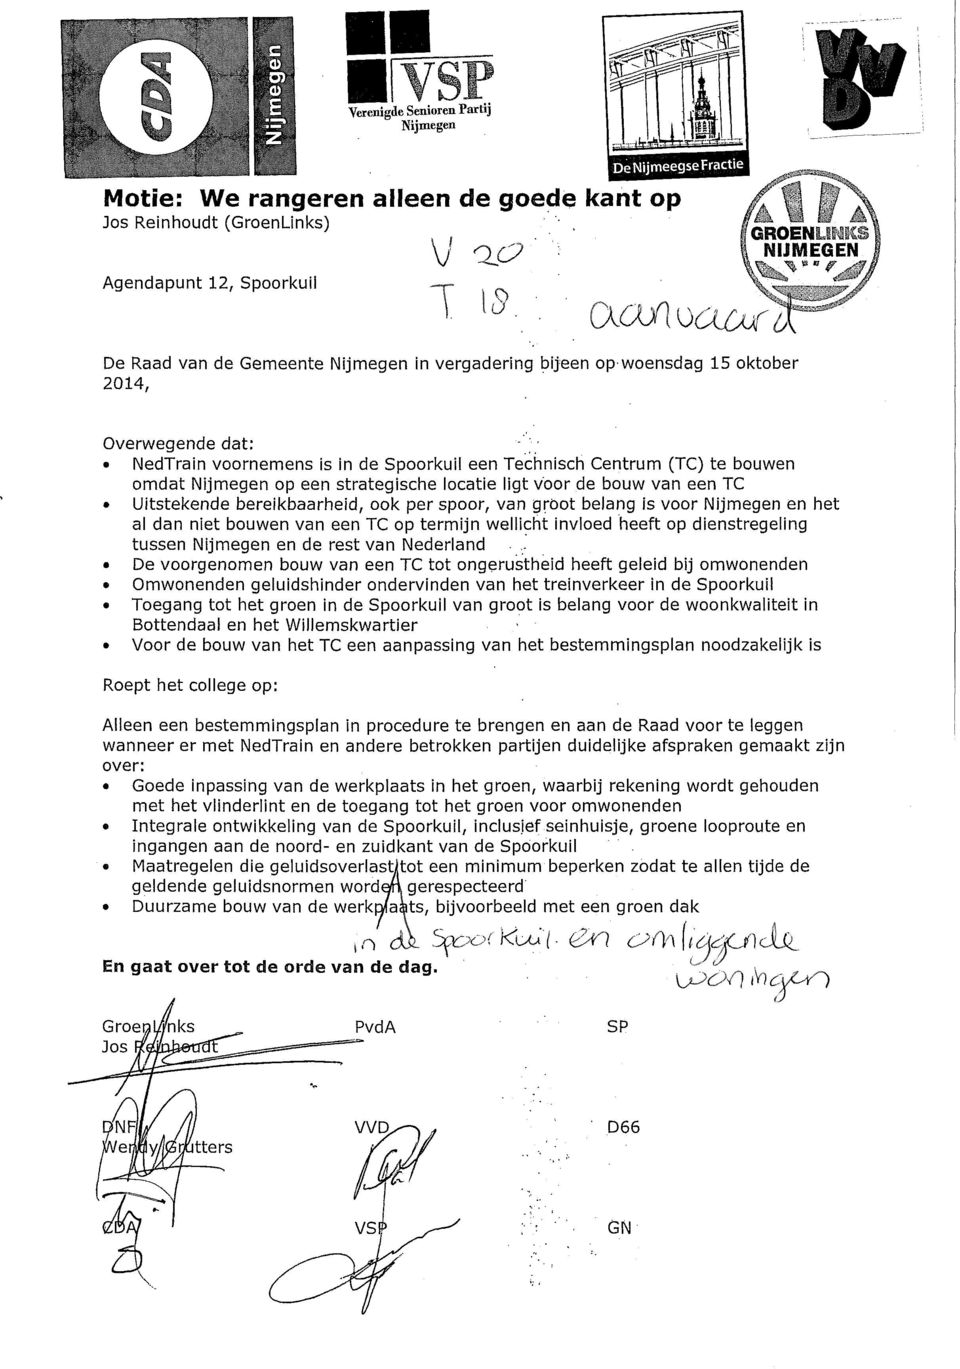 dienstregeling tussen Nijmegen en de rest van Nederland De voorgenomen bouw van een TC tot ongerustheid heeft geleid bij omwonenden Omwonenden geluidshinder ondervinden van het treinverkeer in de